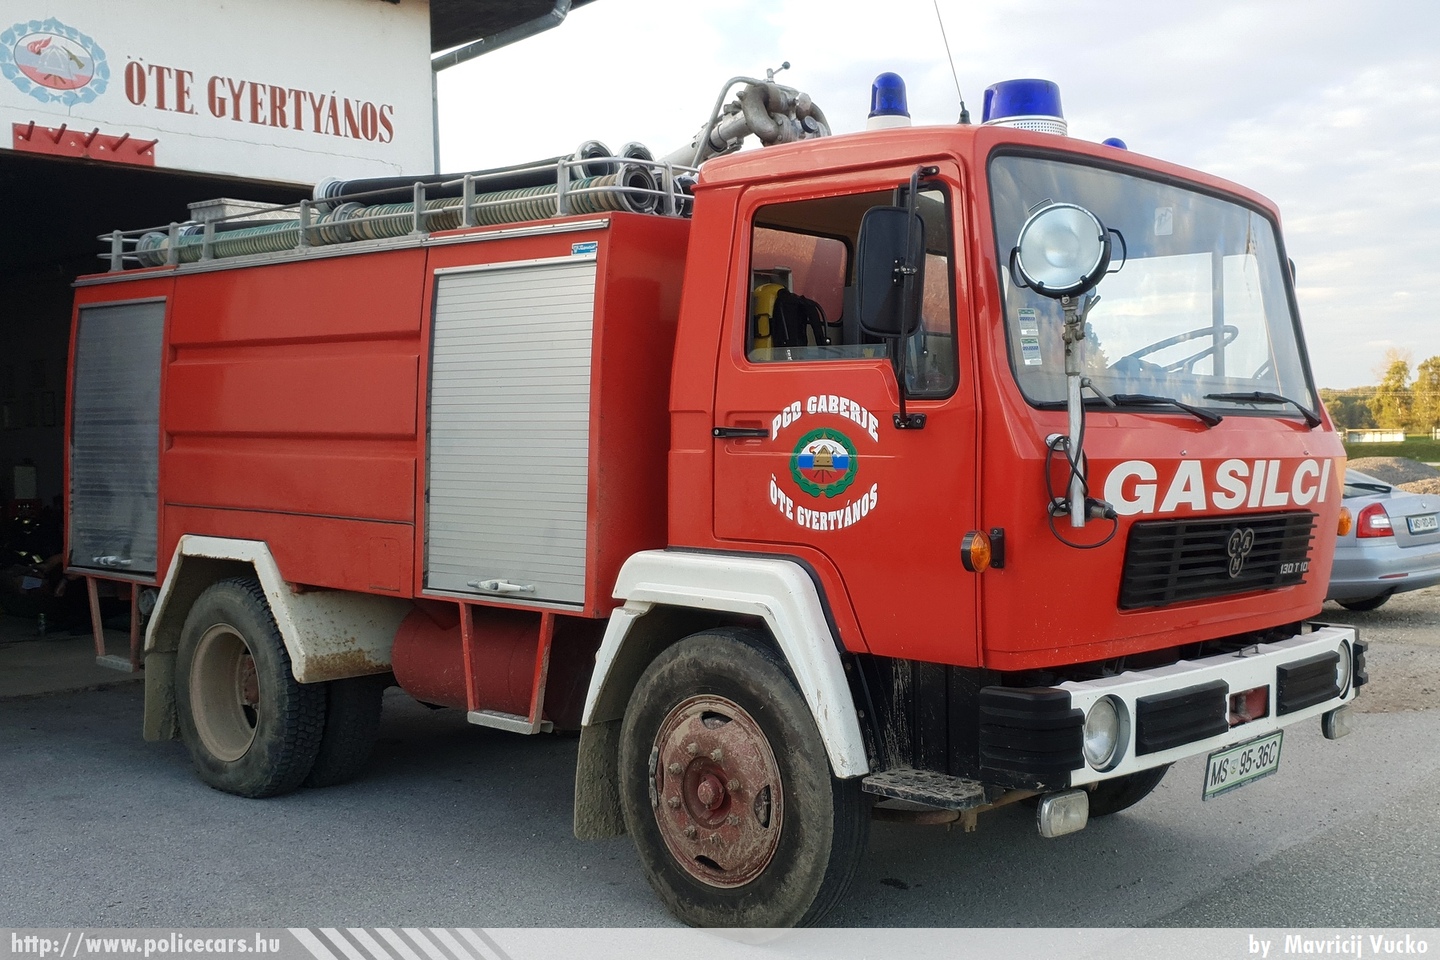 TAM 130 T10 GVC-1, , Önkéntes Tűzoltó Egyesület Gyertyános - Prostovoljno gasilsko drustvo Gaberje, fotó: Mavricij Vucko
Keywords: szlovén Szlovénia tûzoltóautó tûzoltóság tûzoltó slovenian Slovenia fire firetruck